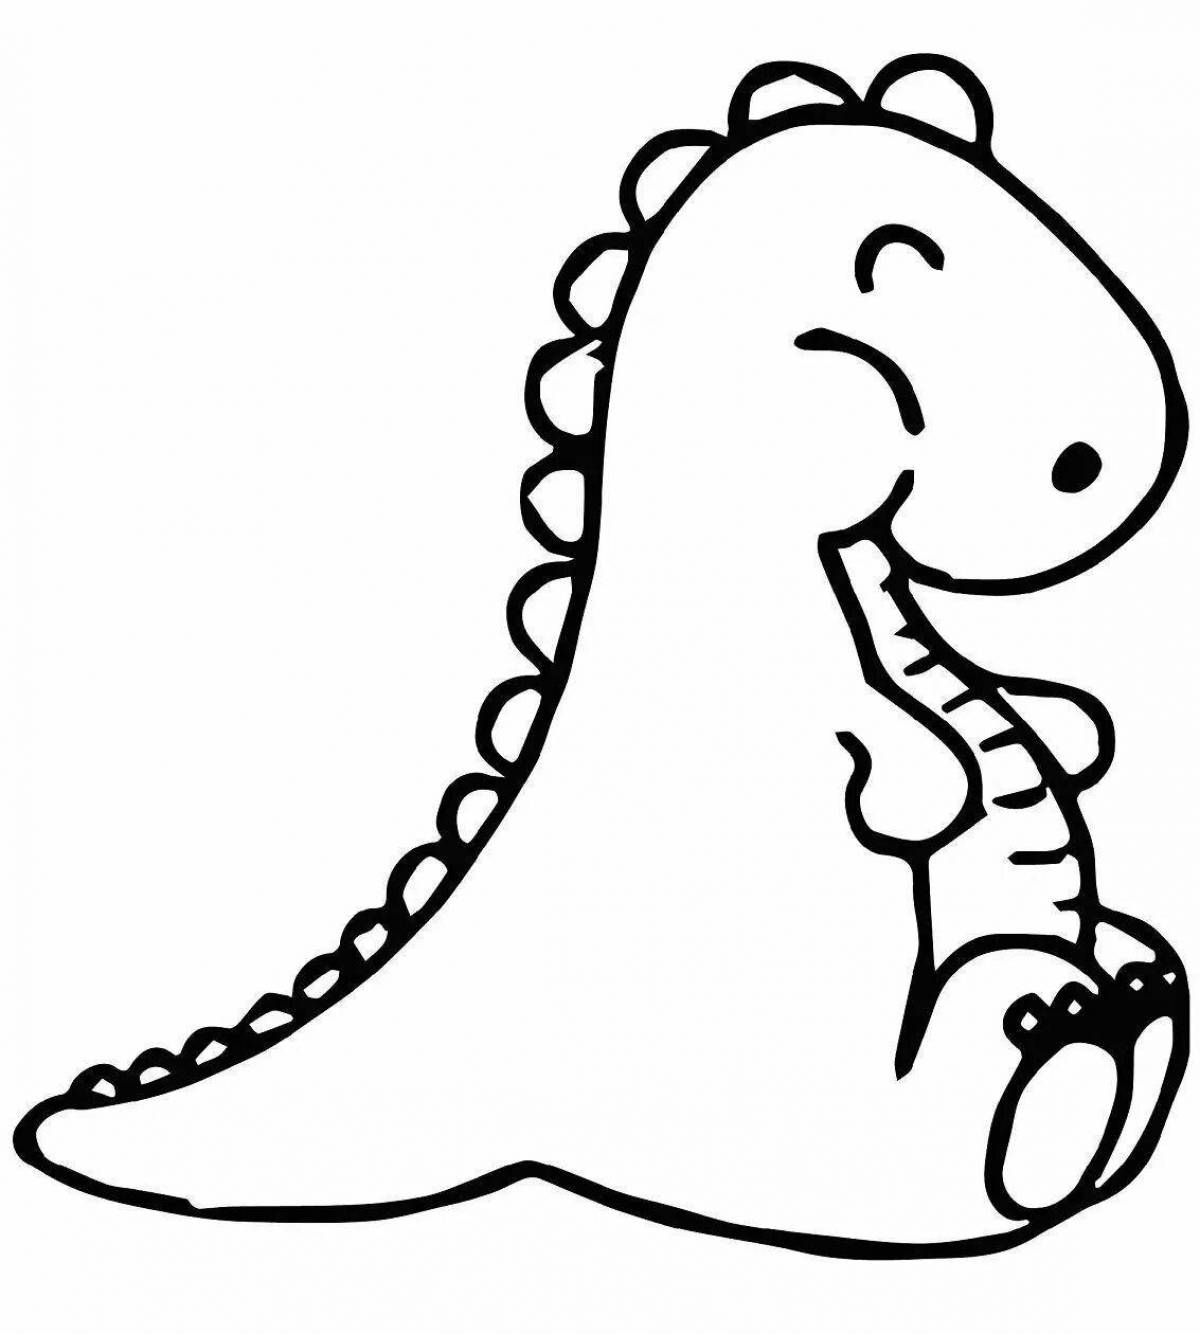 Игривая страница раскраски динозавров для детей